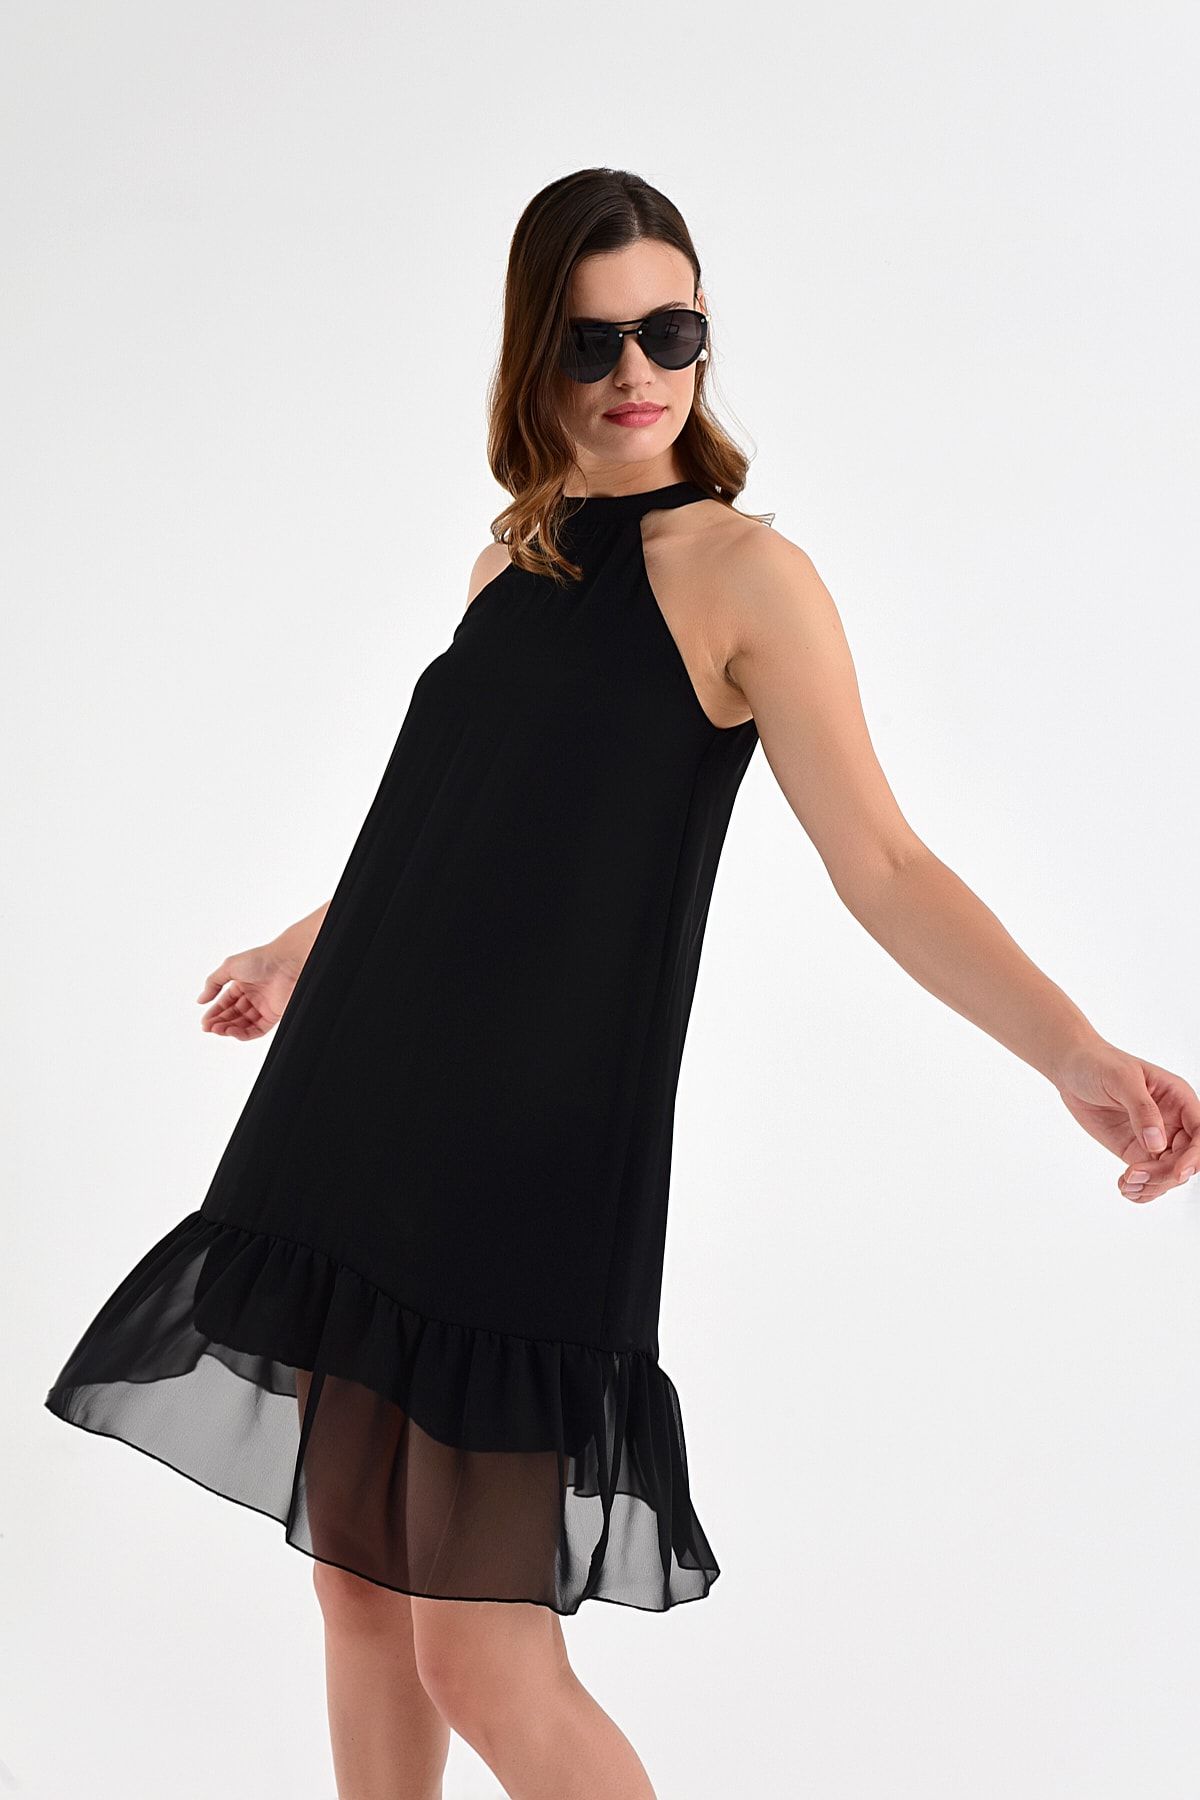 Laranor Kadın Siyah Yaka Detay Etek Ucu Volan Şifon Elbise 20L6837